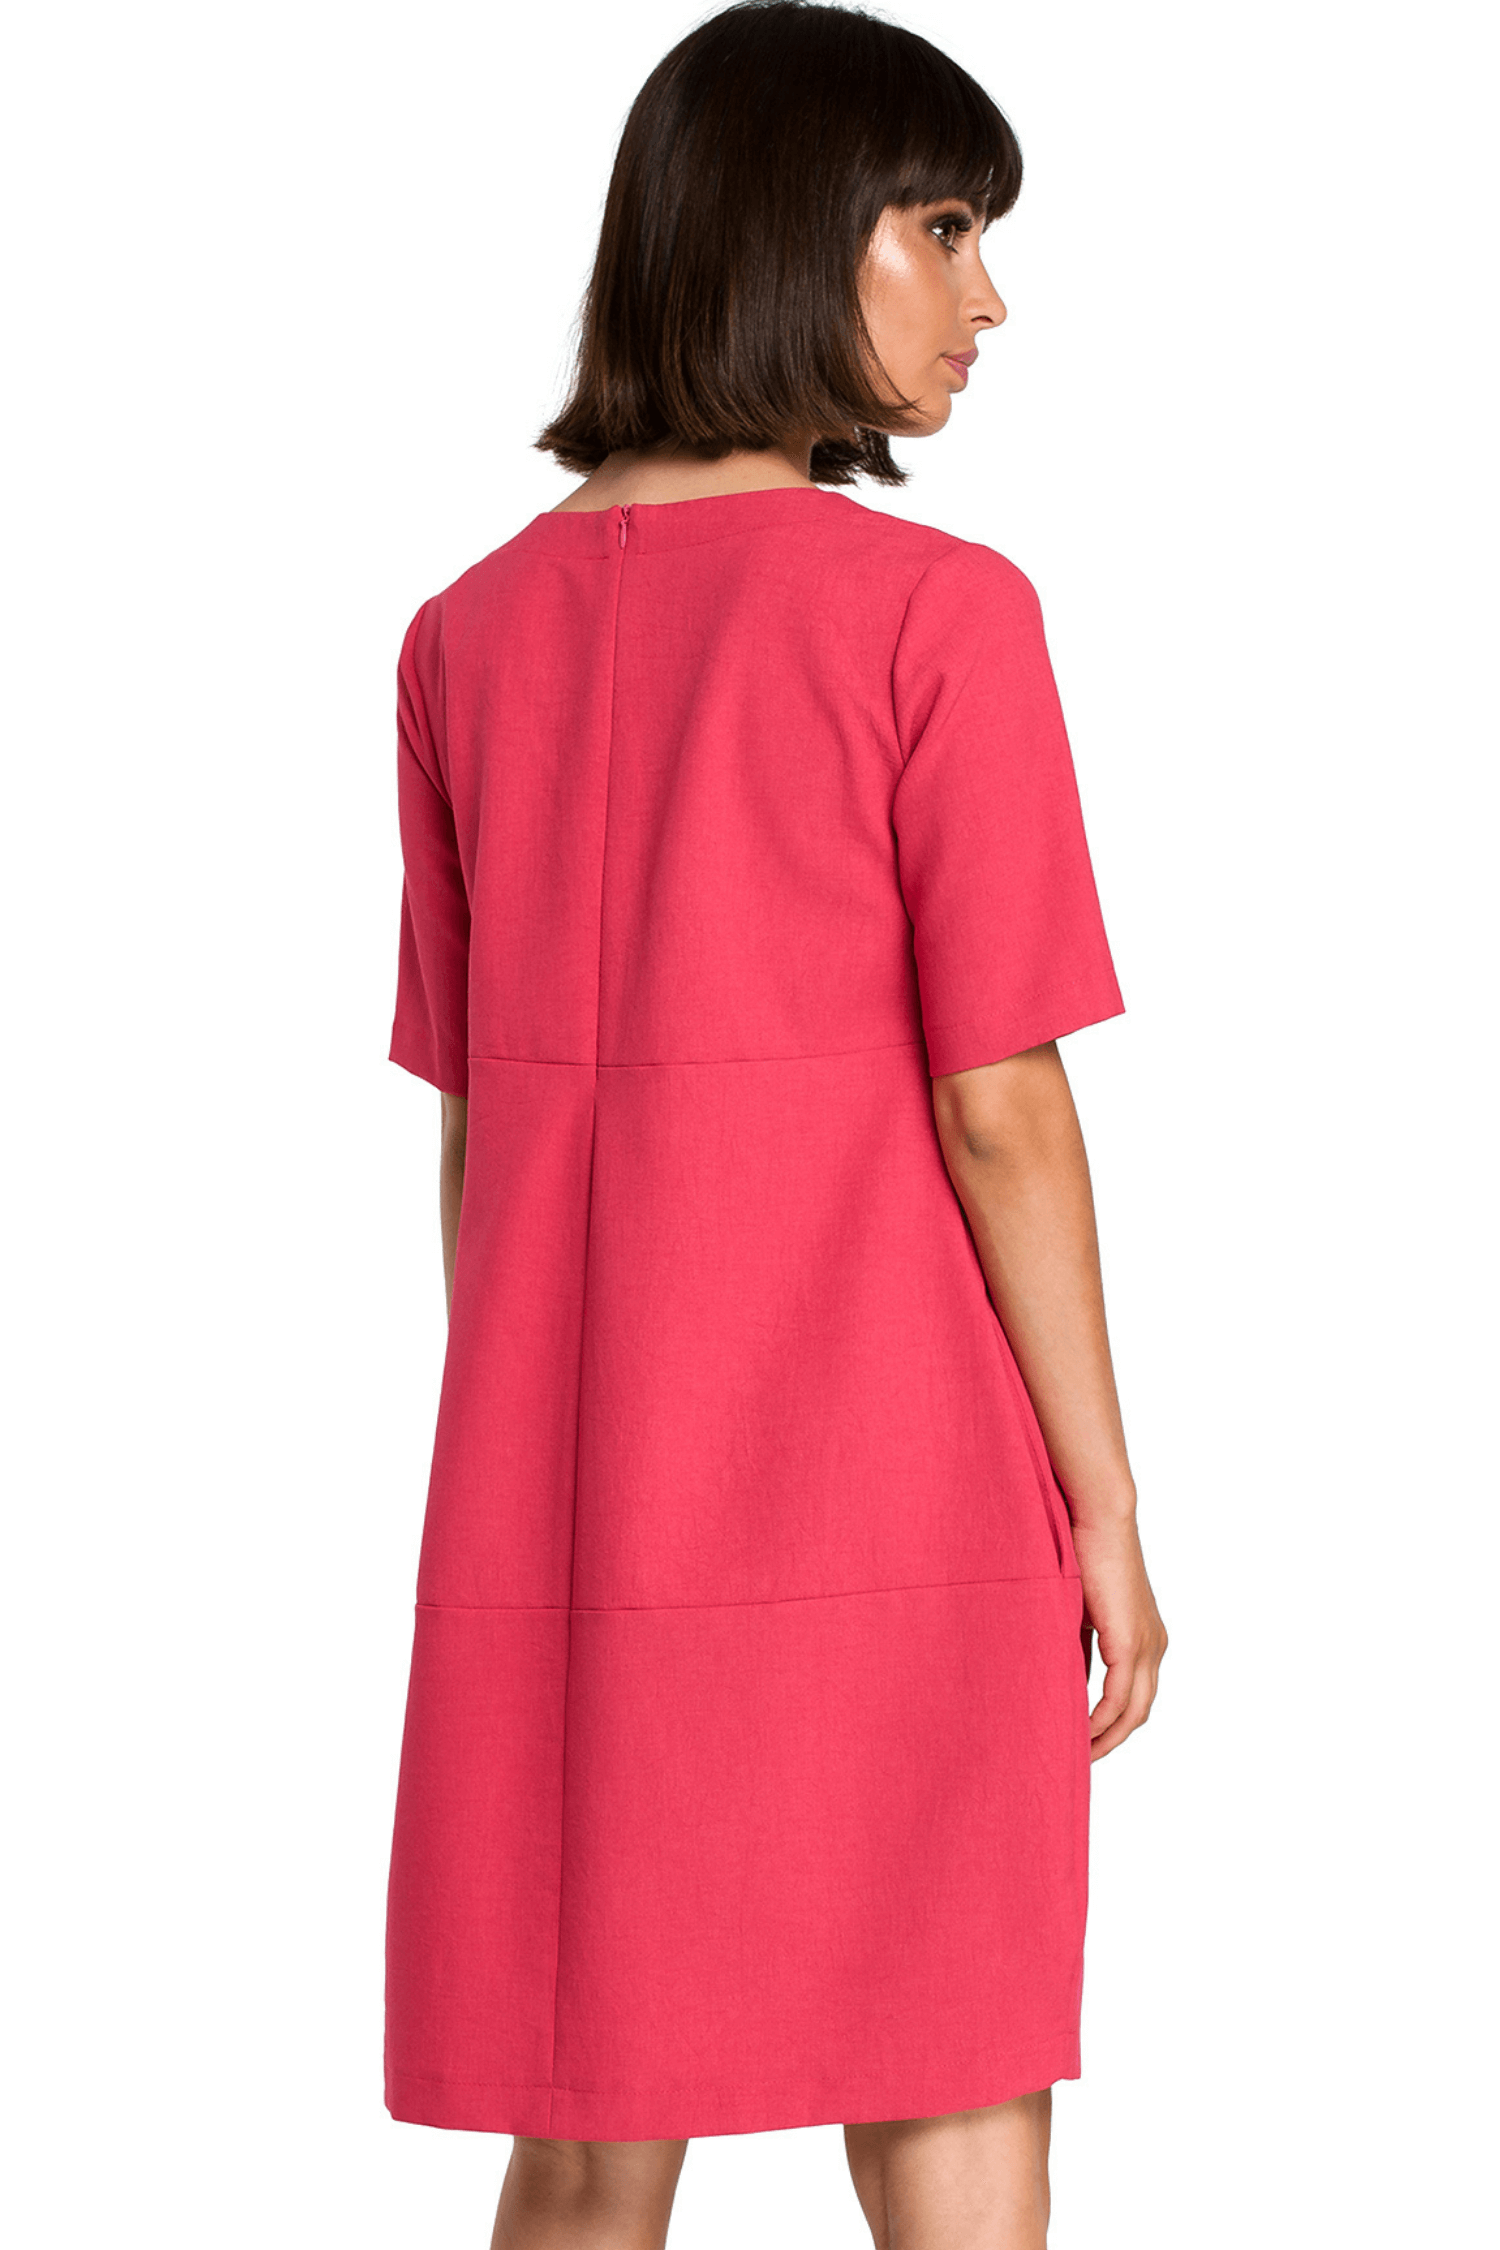 Opis: Lniana sukienka na lato bombka oversize z kieszeniami różowa.